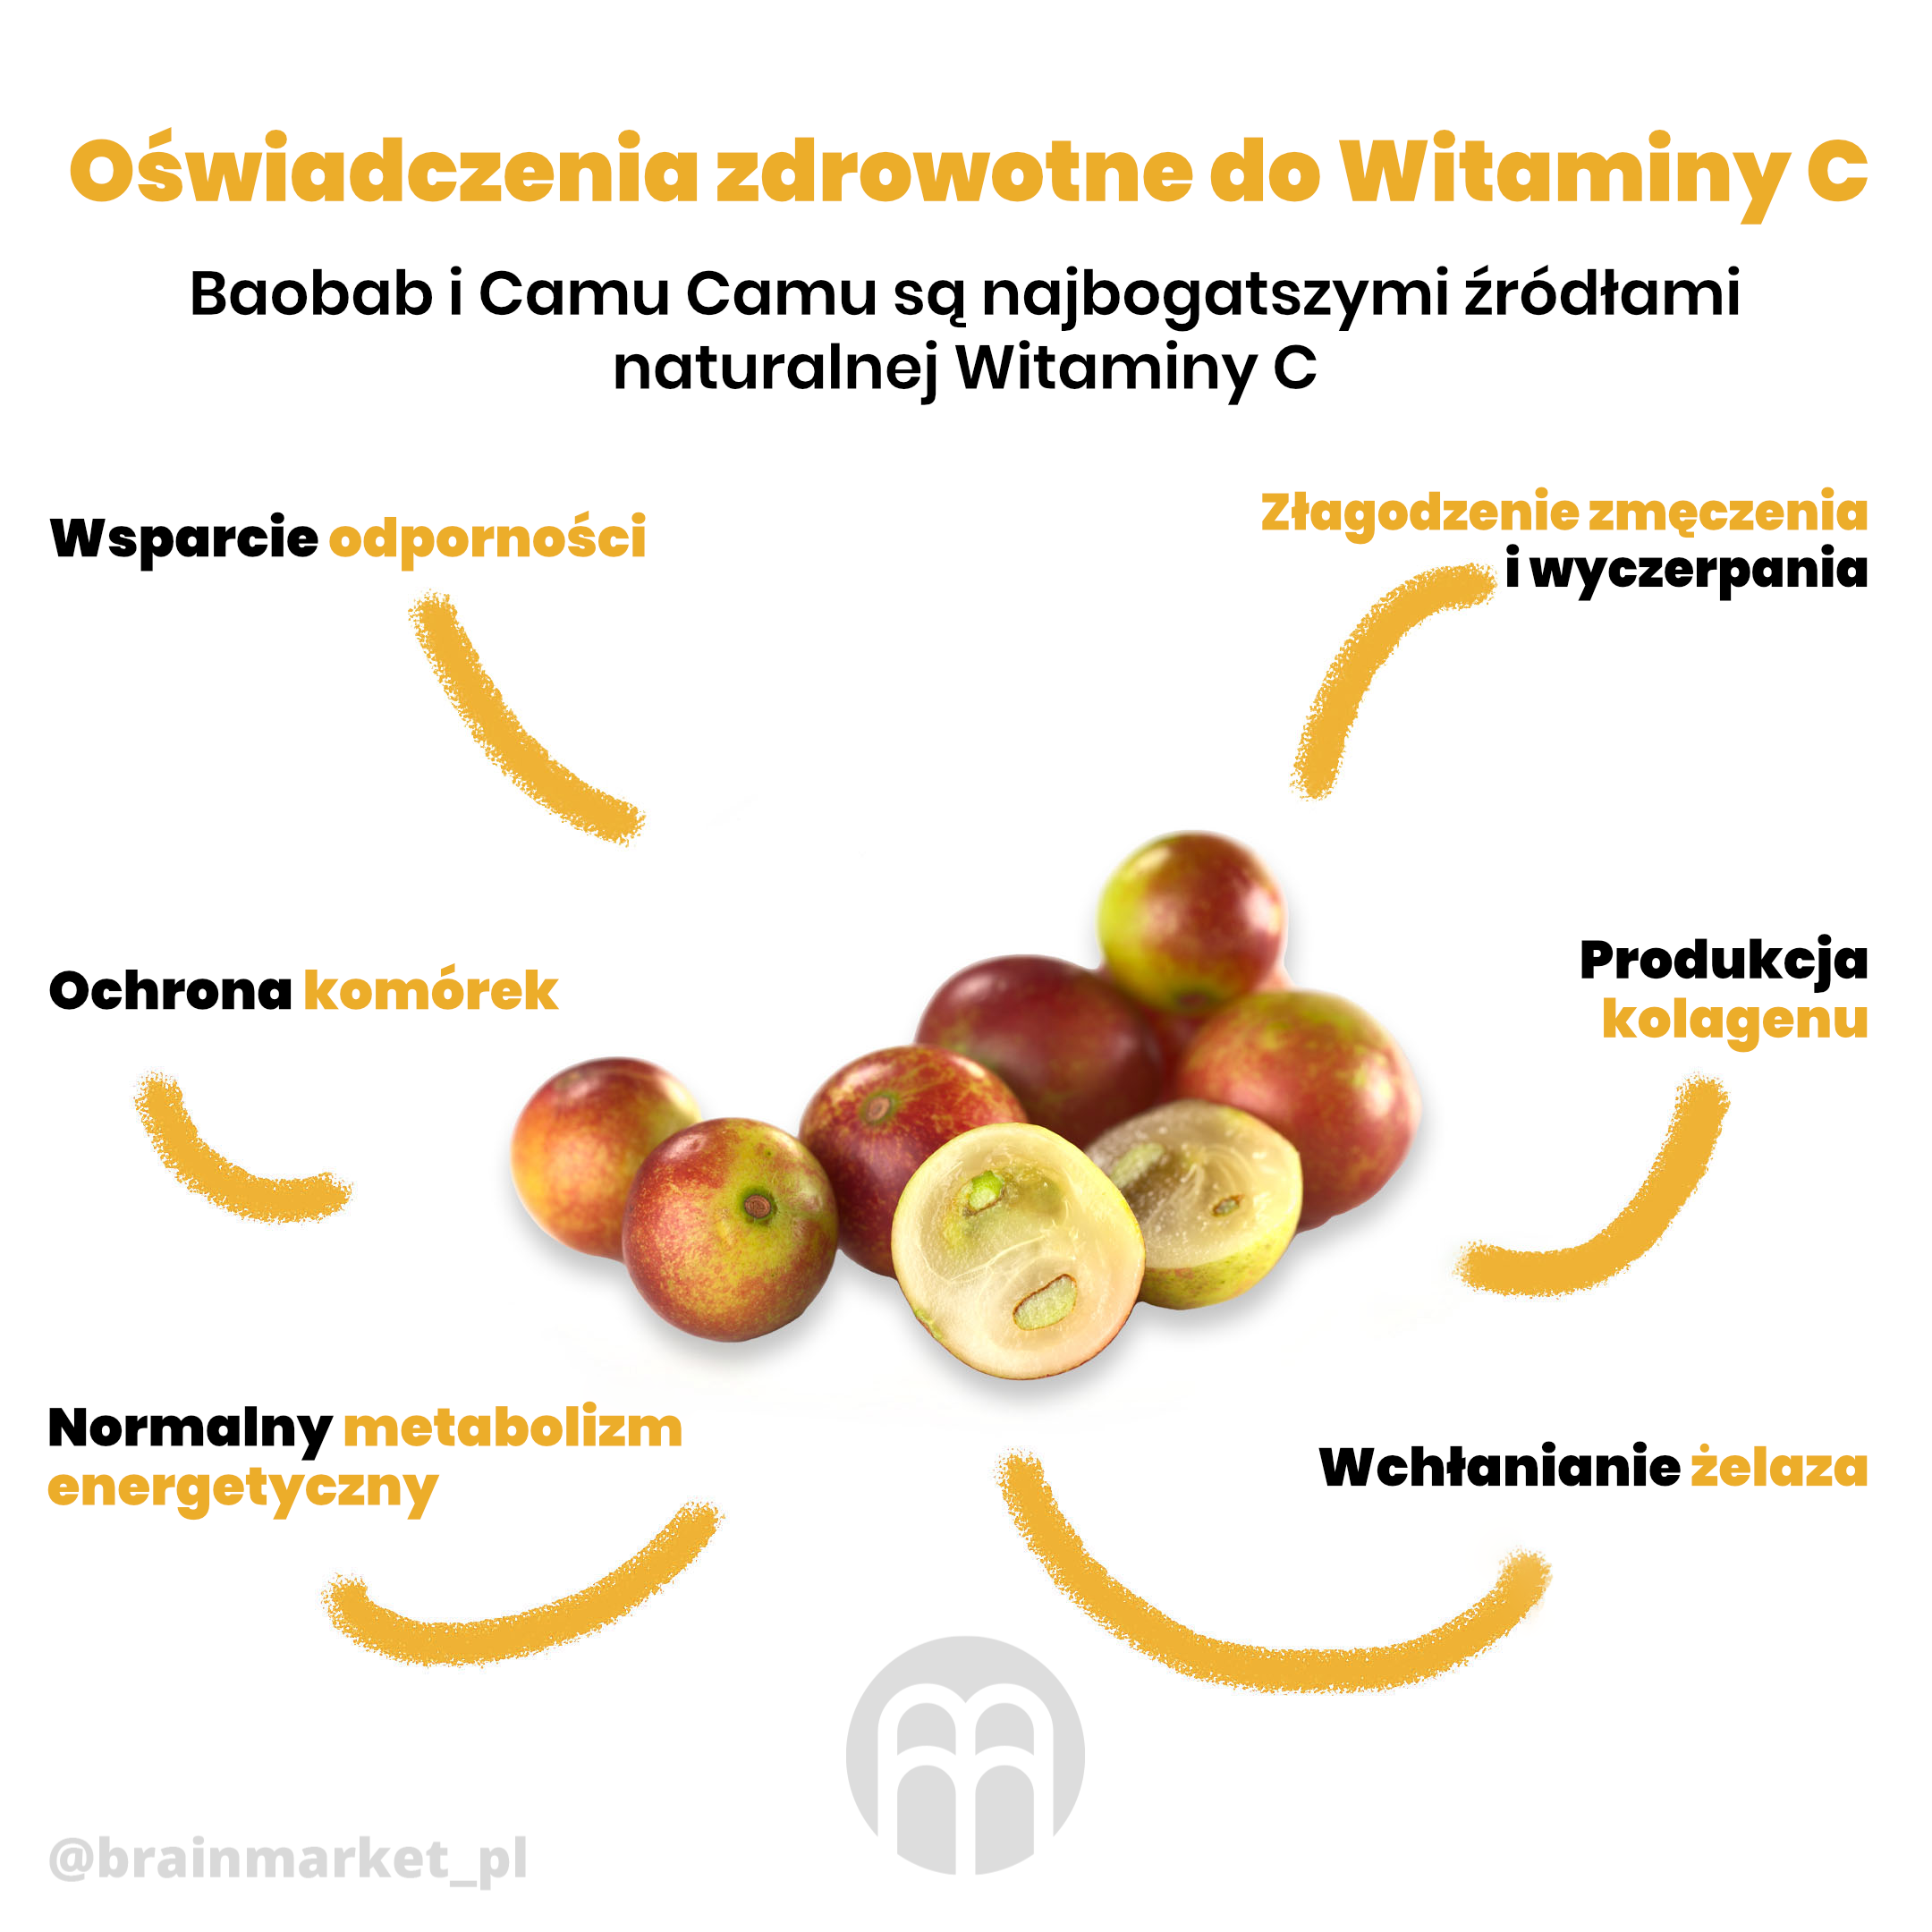 camu camu zdravotni tvrzeni vitamin c infografika brainmarket pl